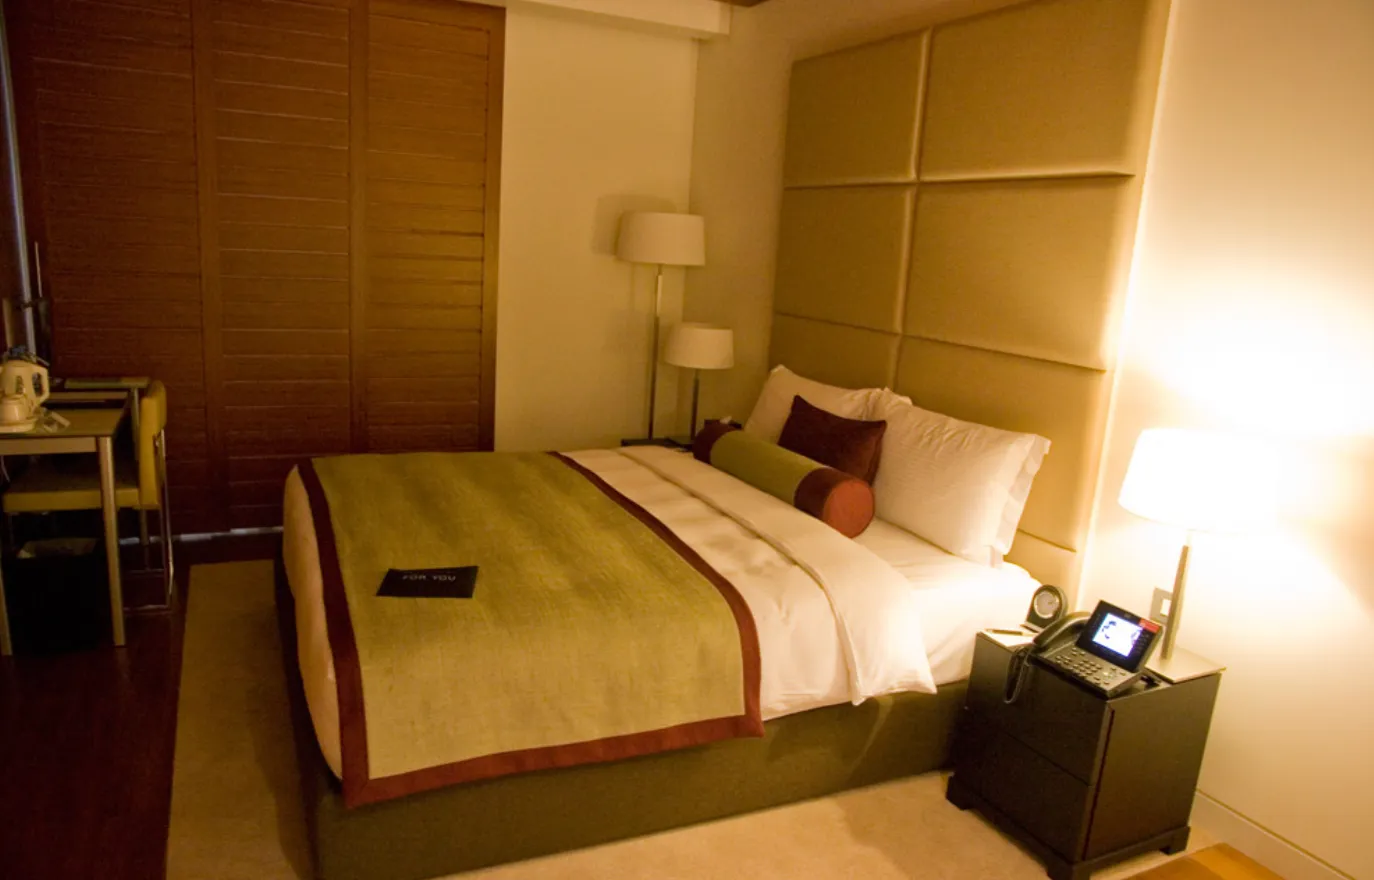 Спальна кімната в номері готелю в аеропорту Хамад у Досі 